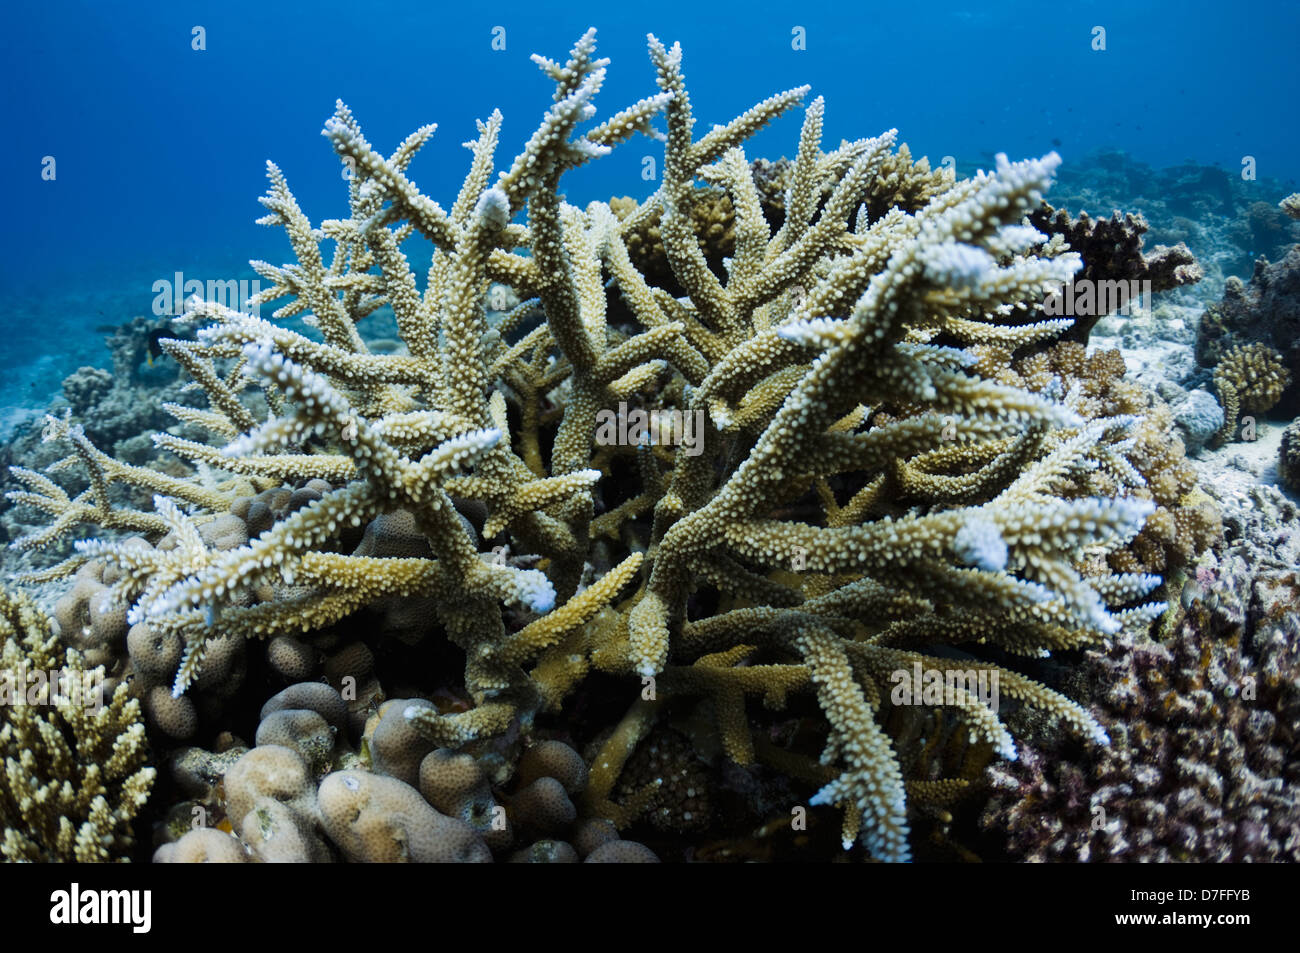 Acropora coral en los arrecifes de coral. Maldivas. Foto de stock